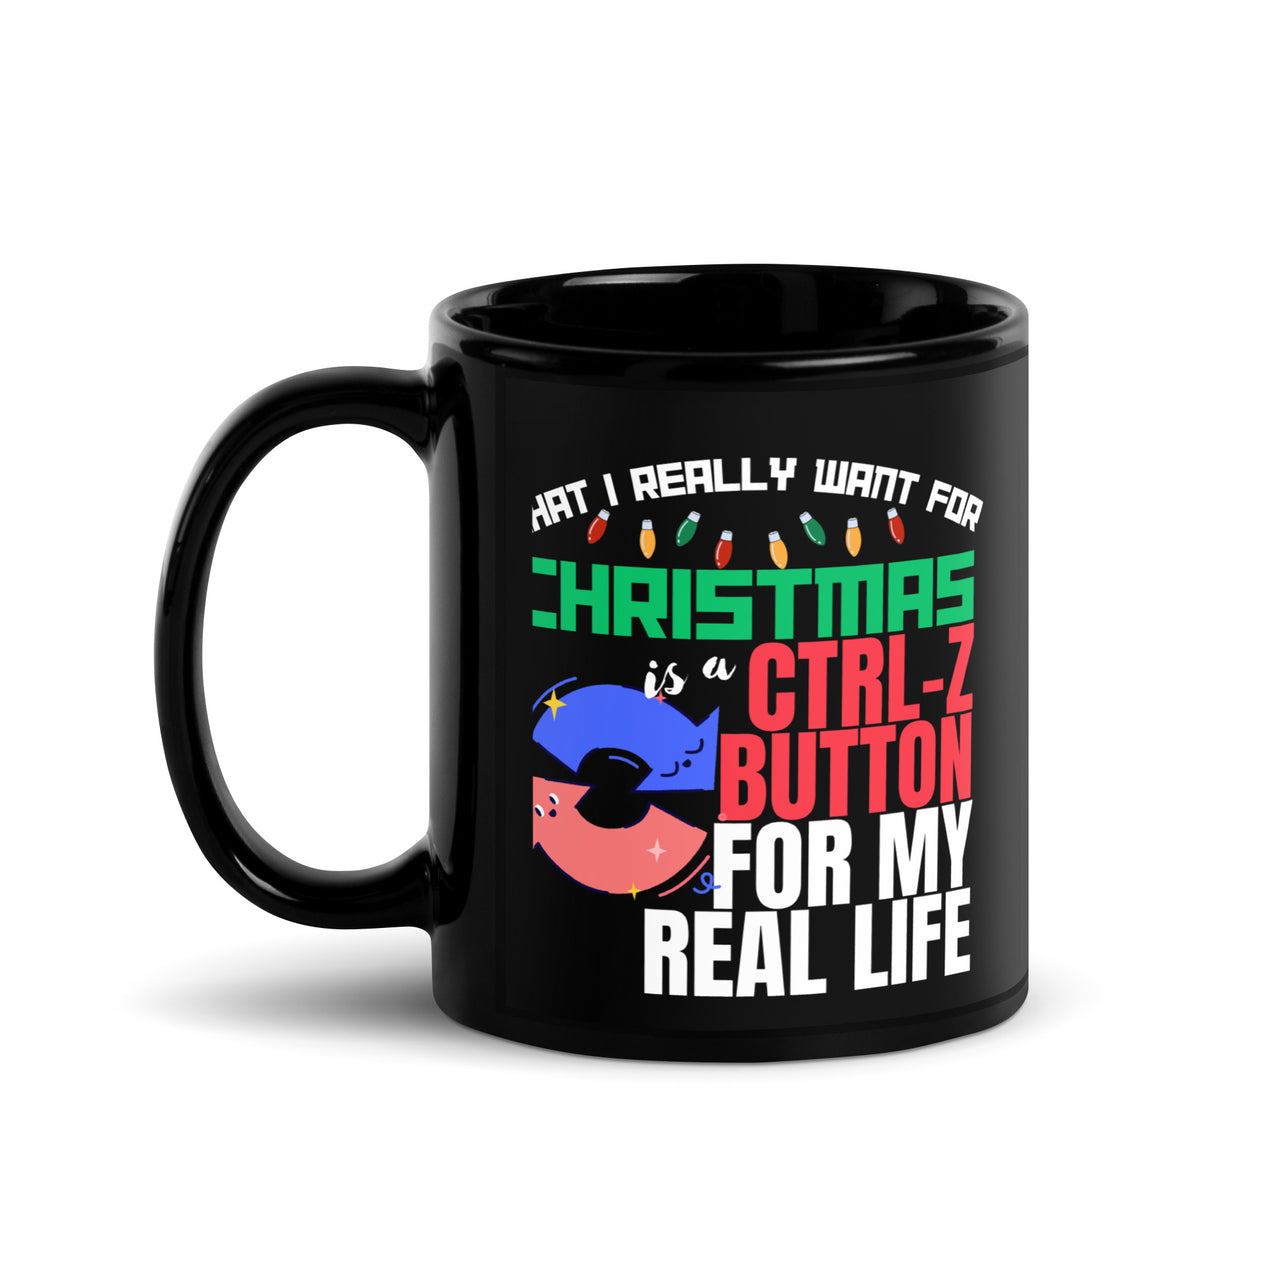 Christmas Laughs Control-Z Button Humor Black Mug